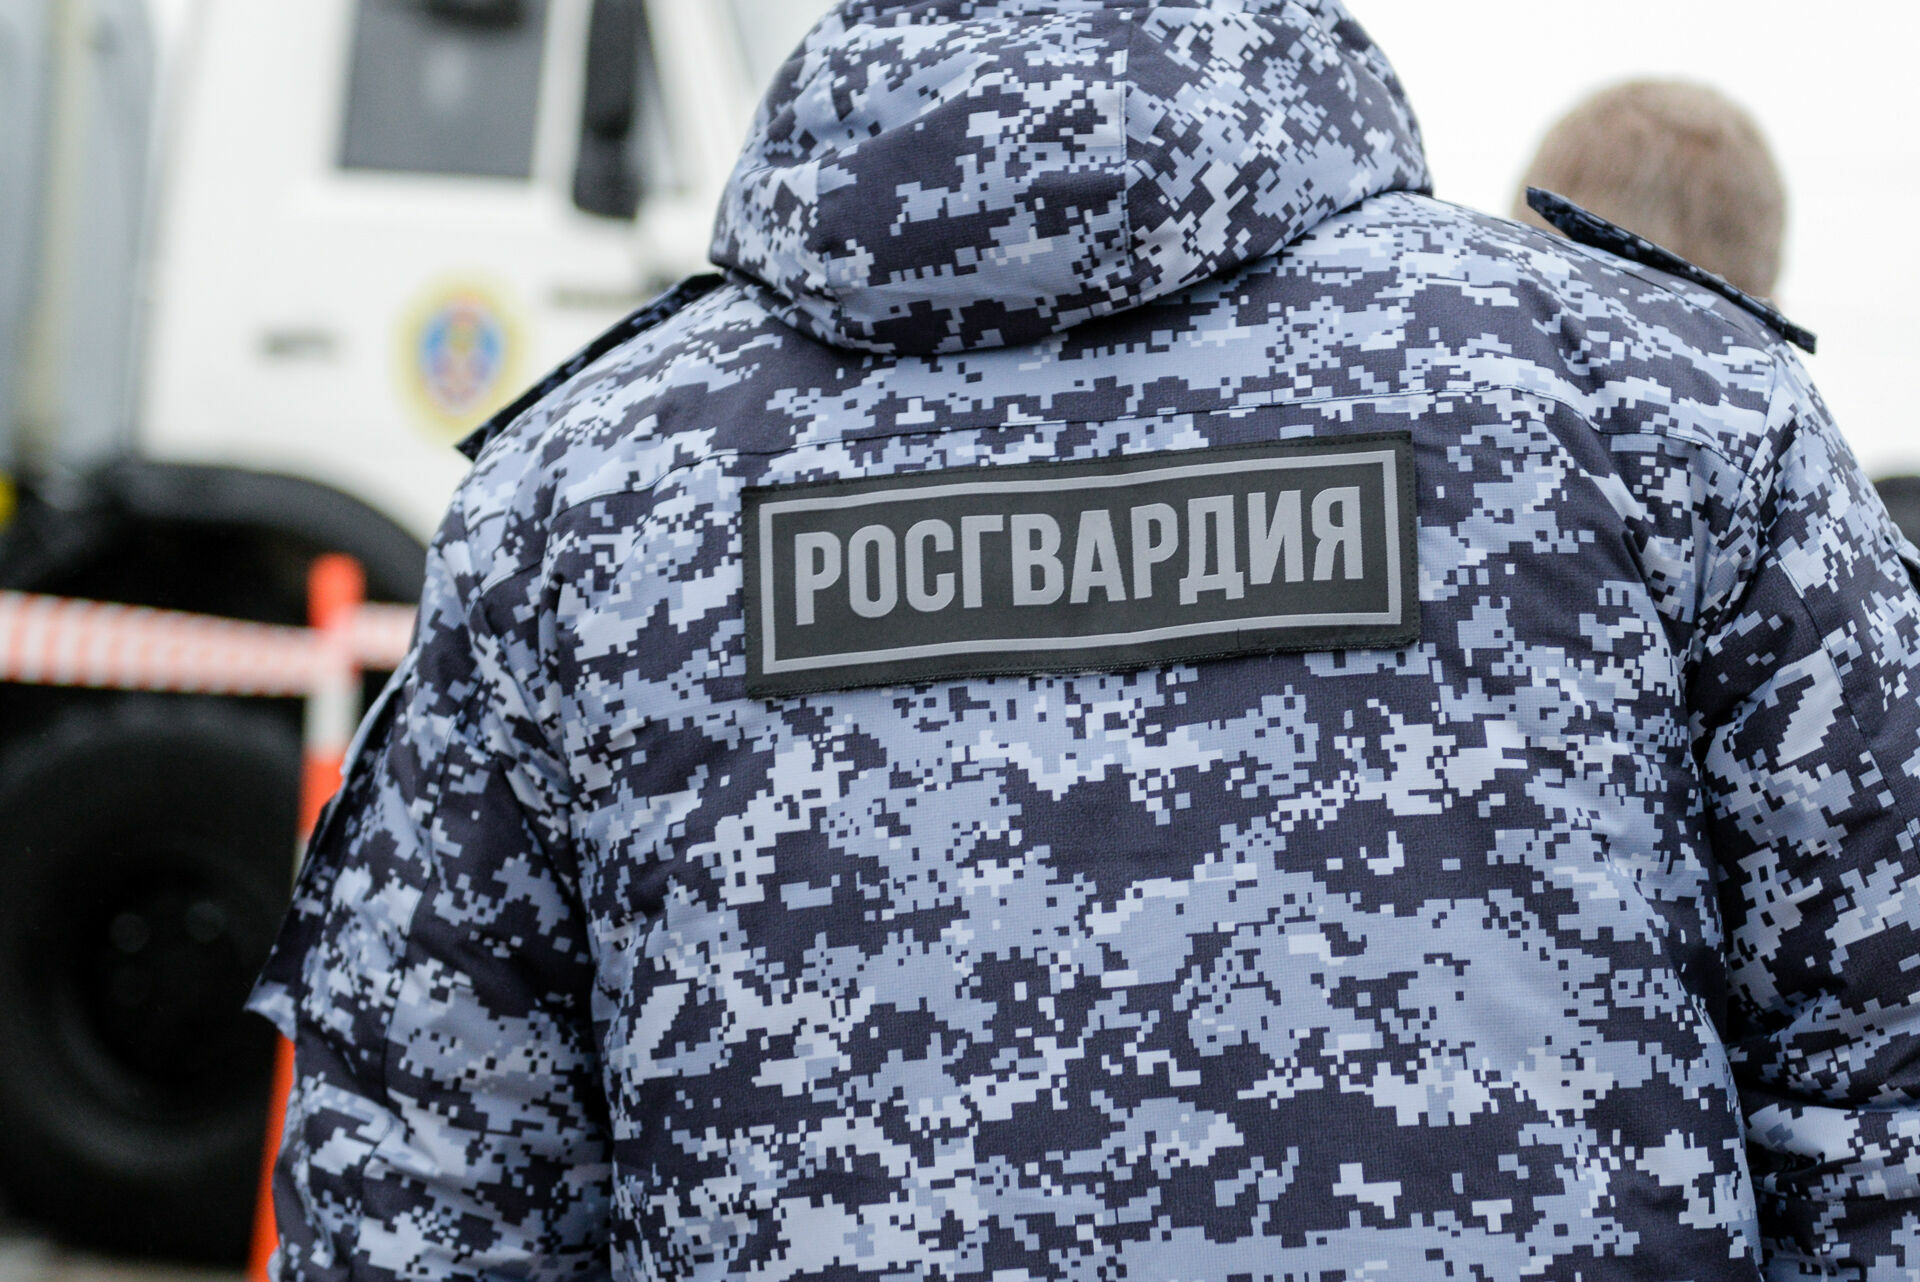 Буйного посетителя задержали в одном из баров Петрозаводска